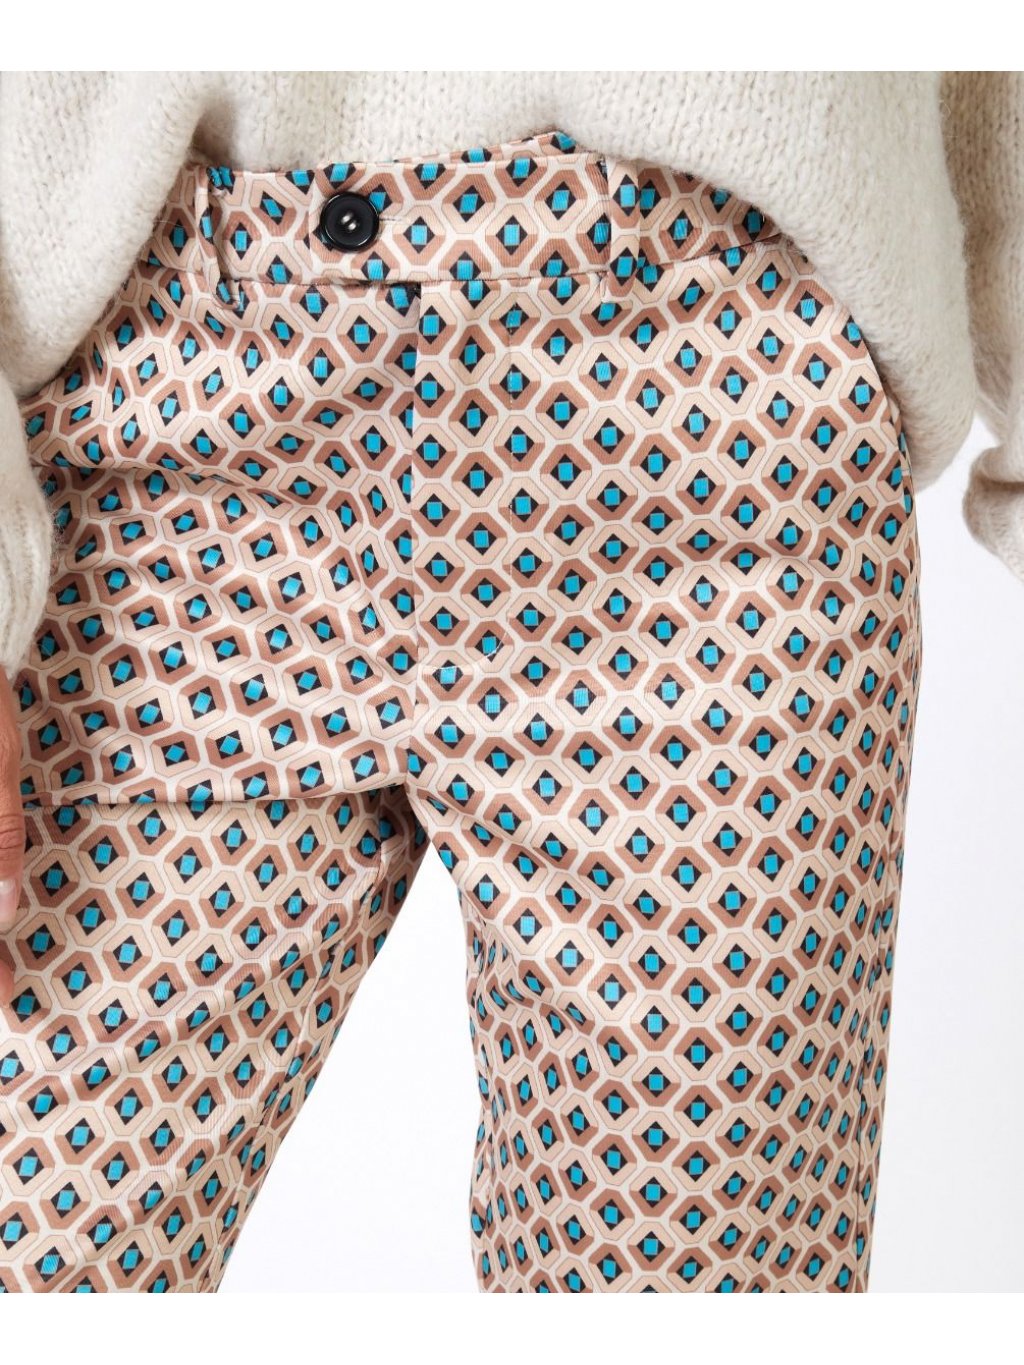 Kalhoty Esqualo 17501 béžovo tyrkysové vzor